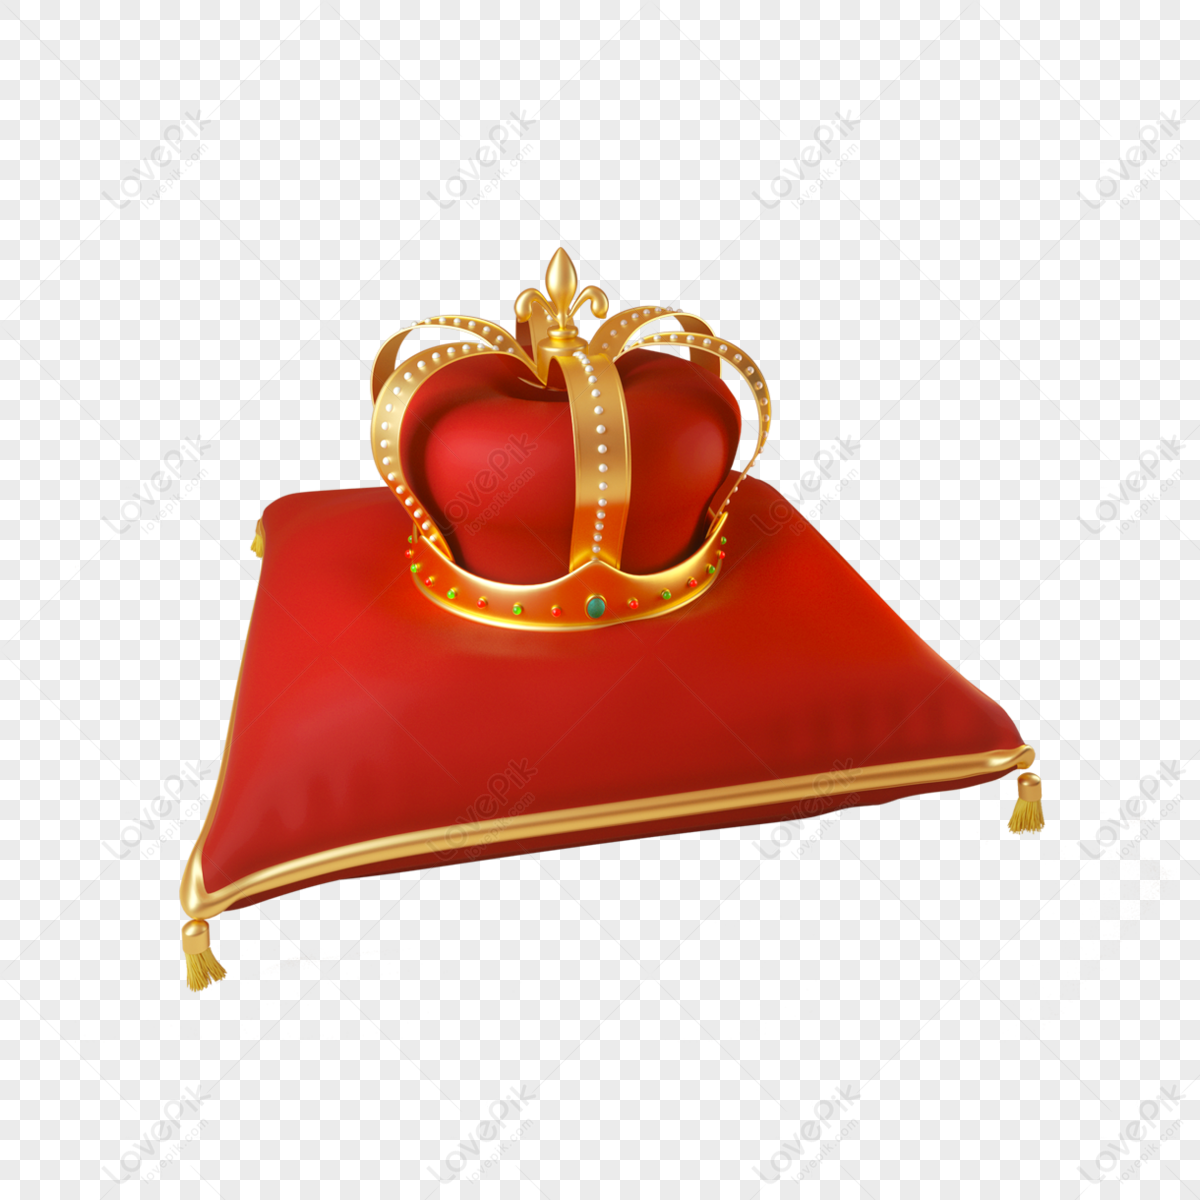 Corona Regina arte vettoriale, icone e grafica per il download gratuito